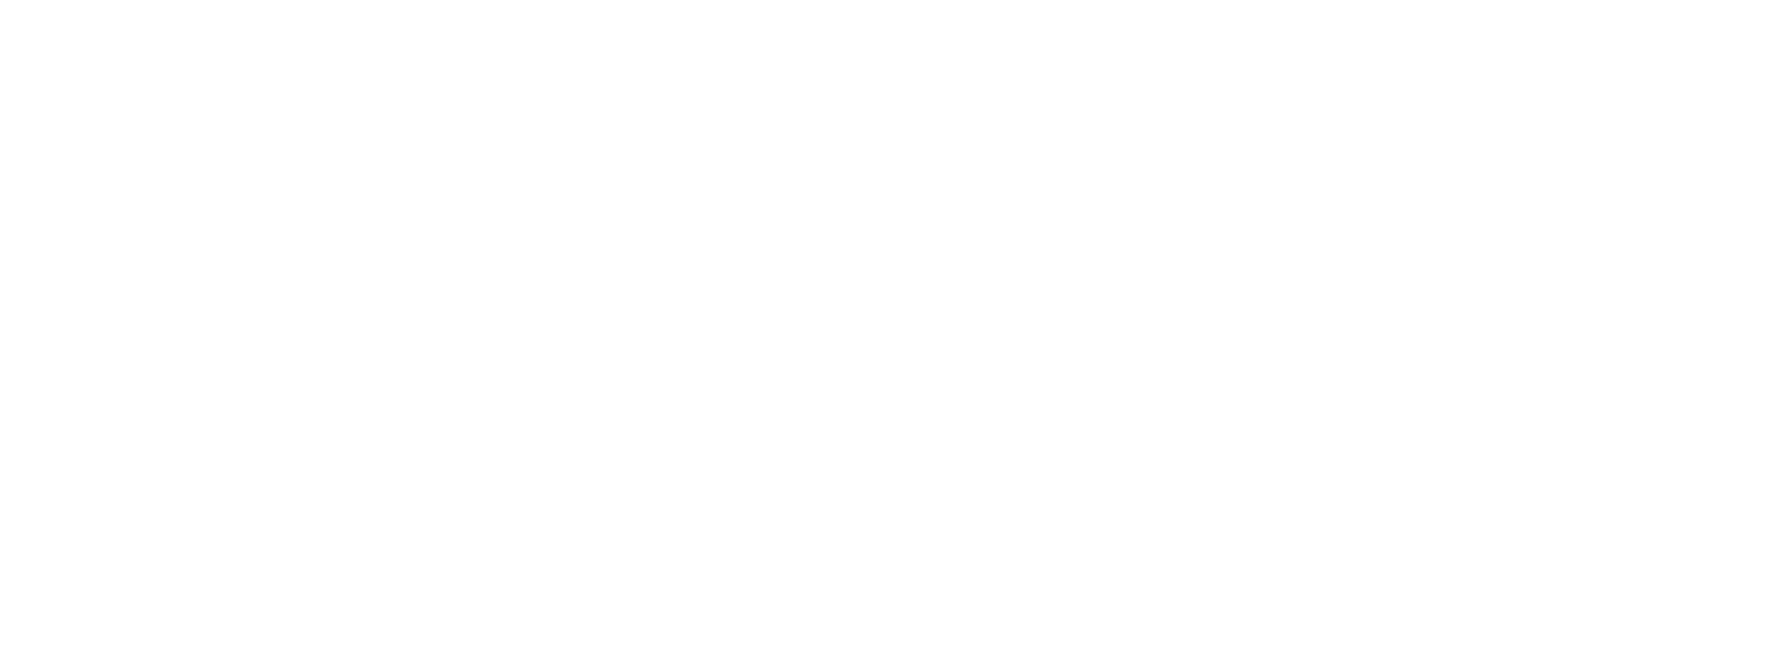 Binford Logo